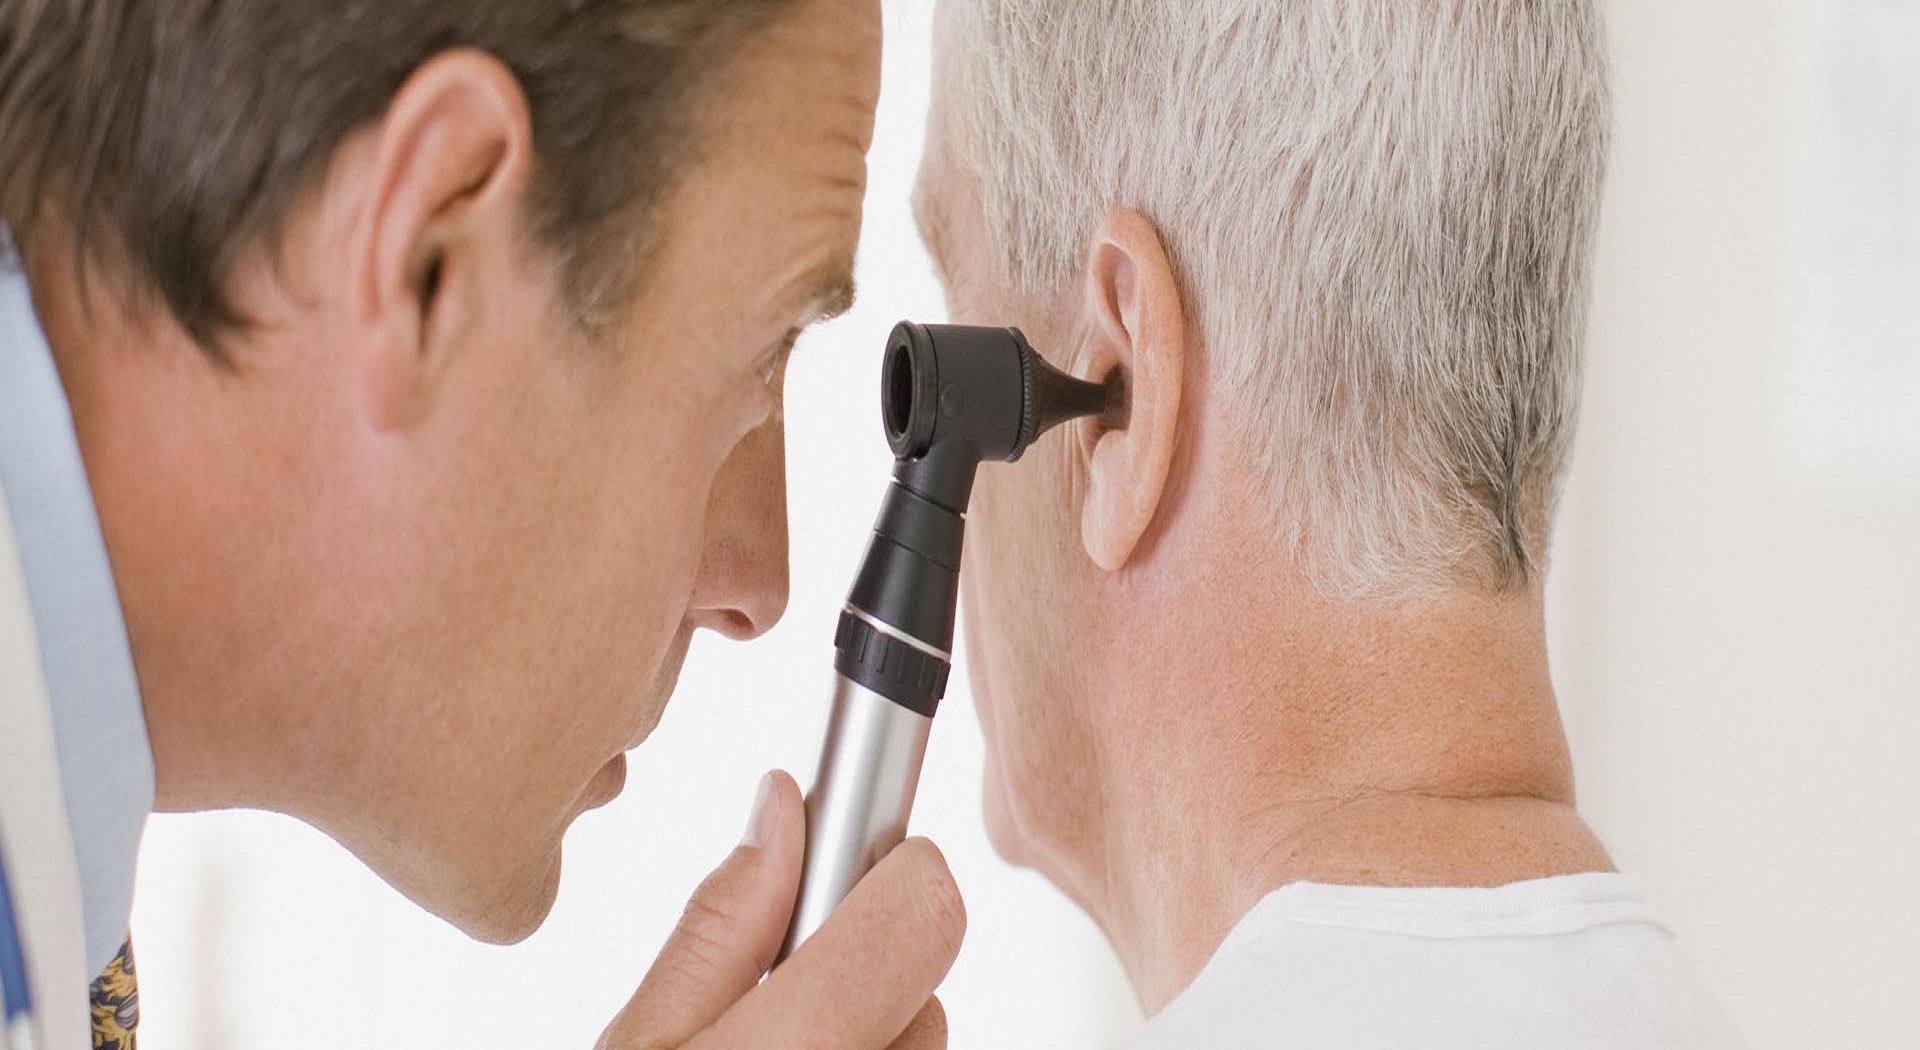 Ανακαλύφθηκε σύνδεση μείωσης ακοής και γνωστικής εξασθένησης